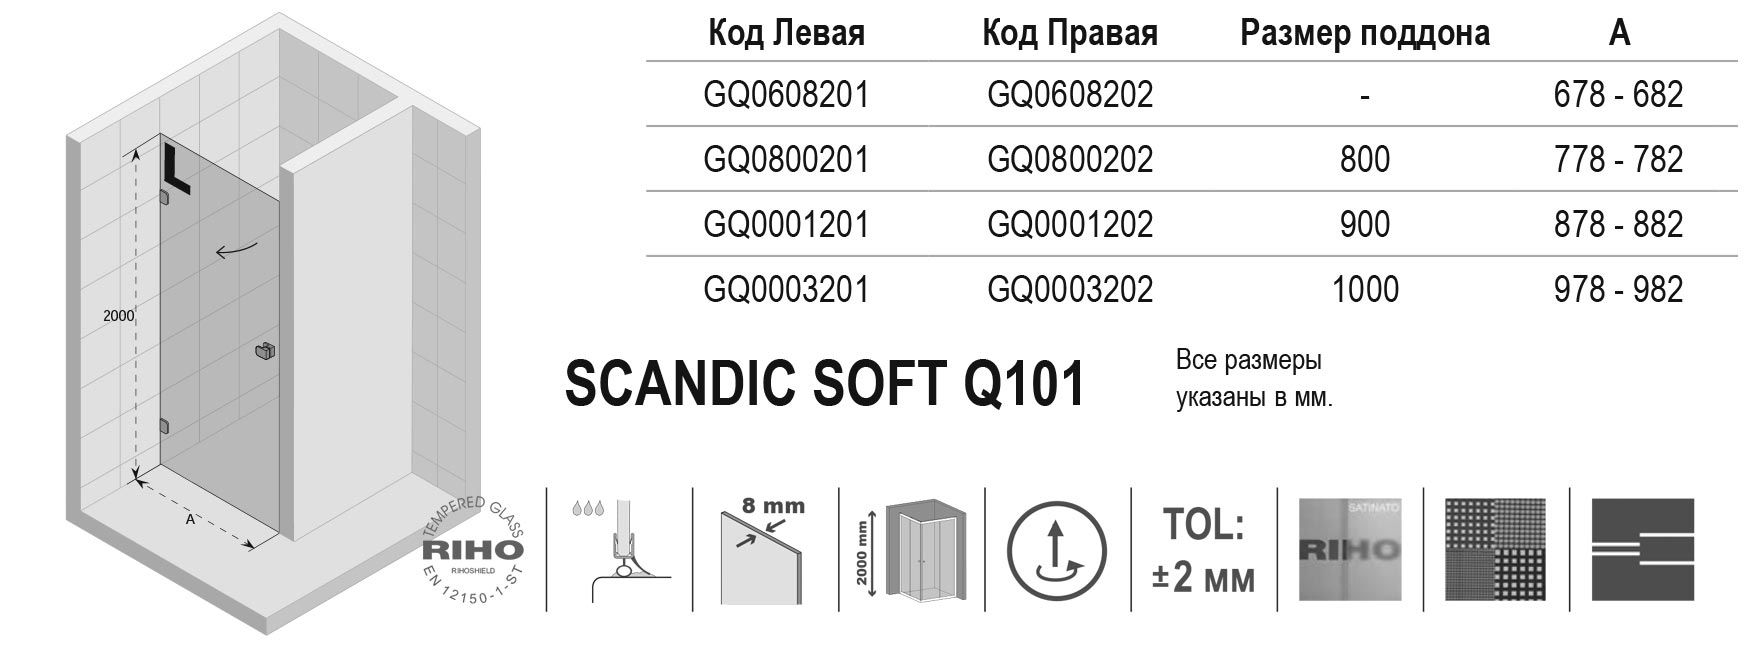 Чертёж Riho Scandic Soft Q101 GQ0800202